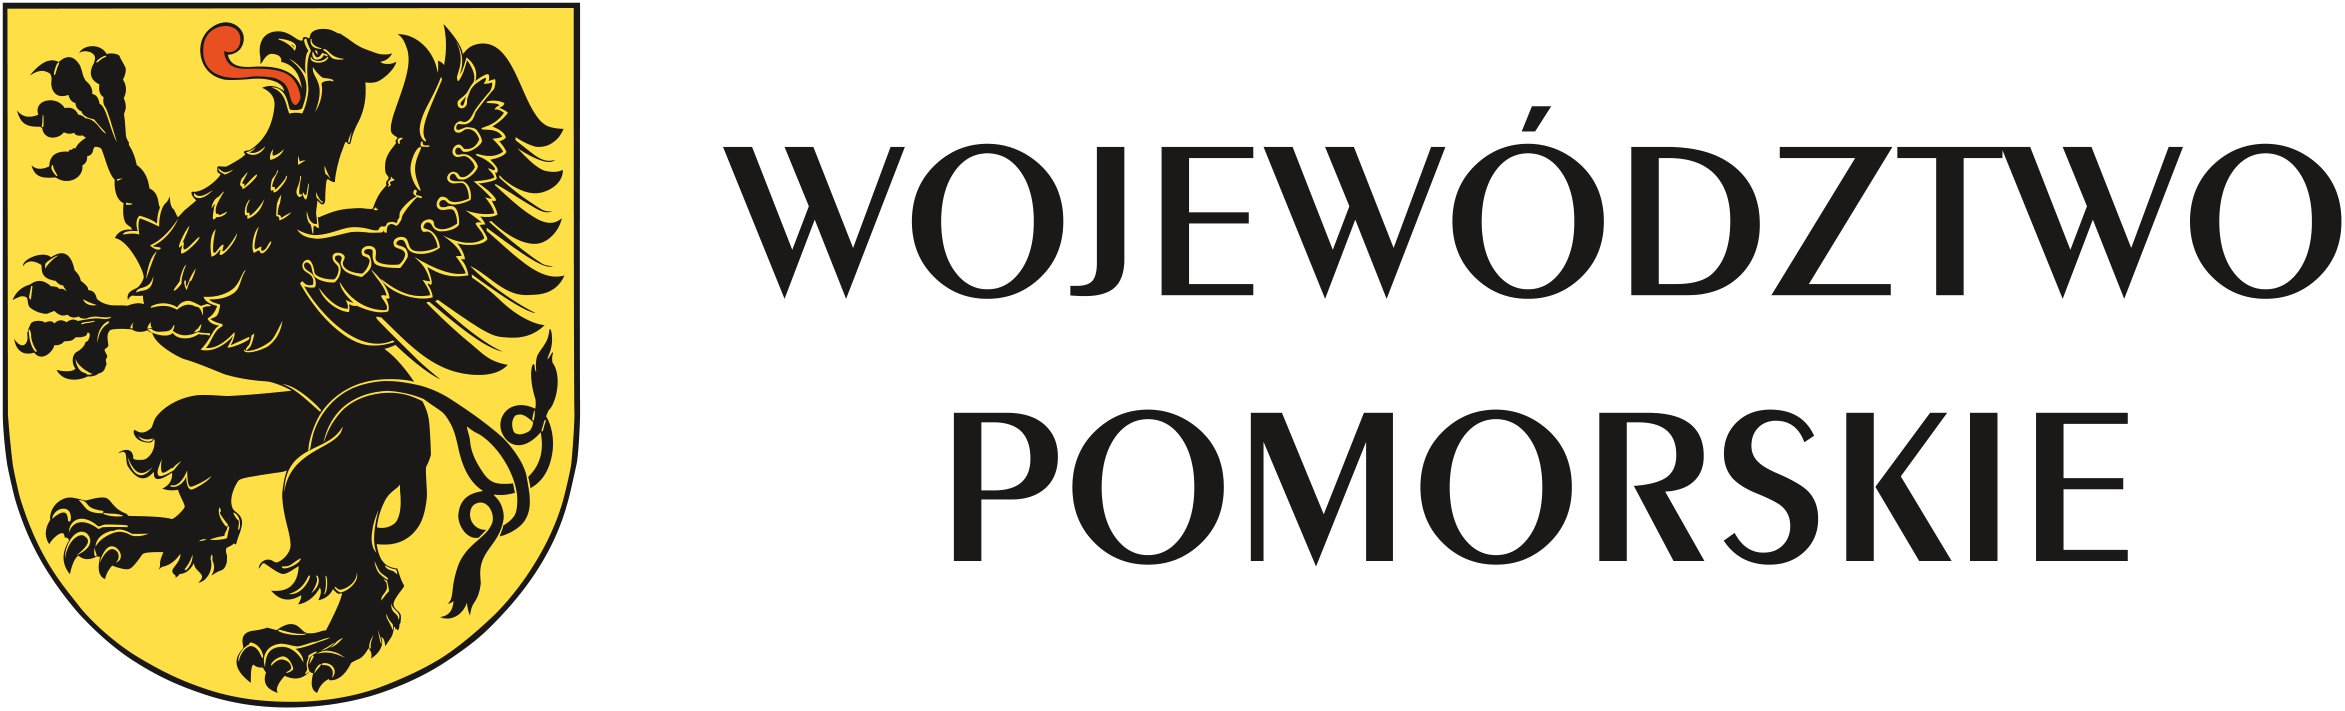 logo województwa pomorskiego